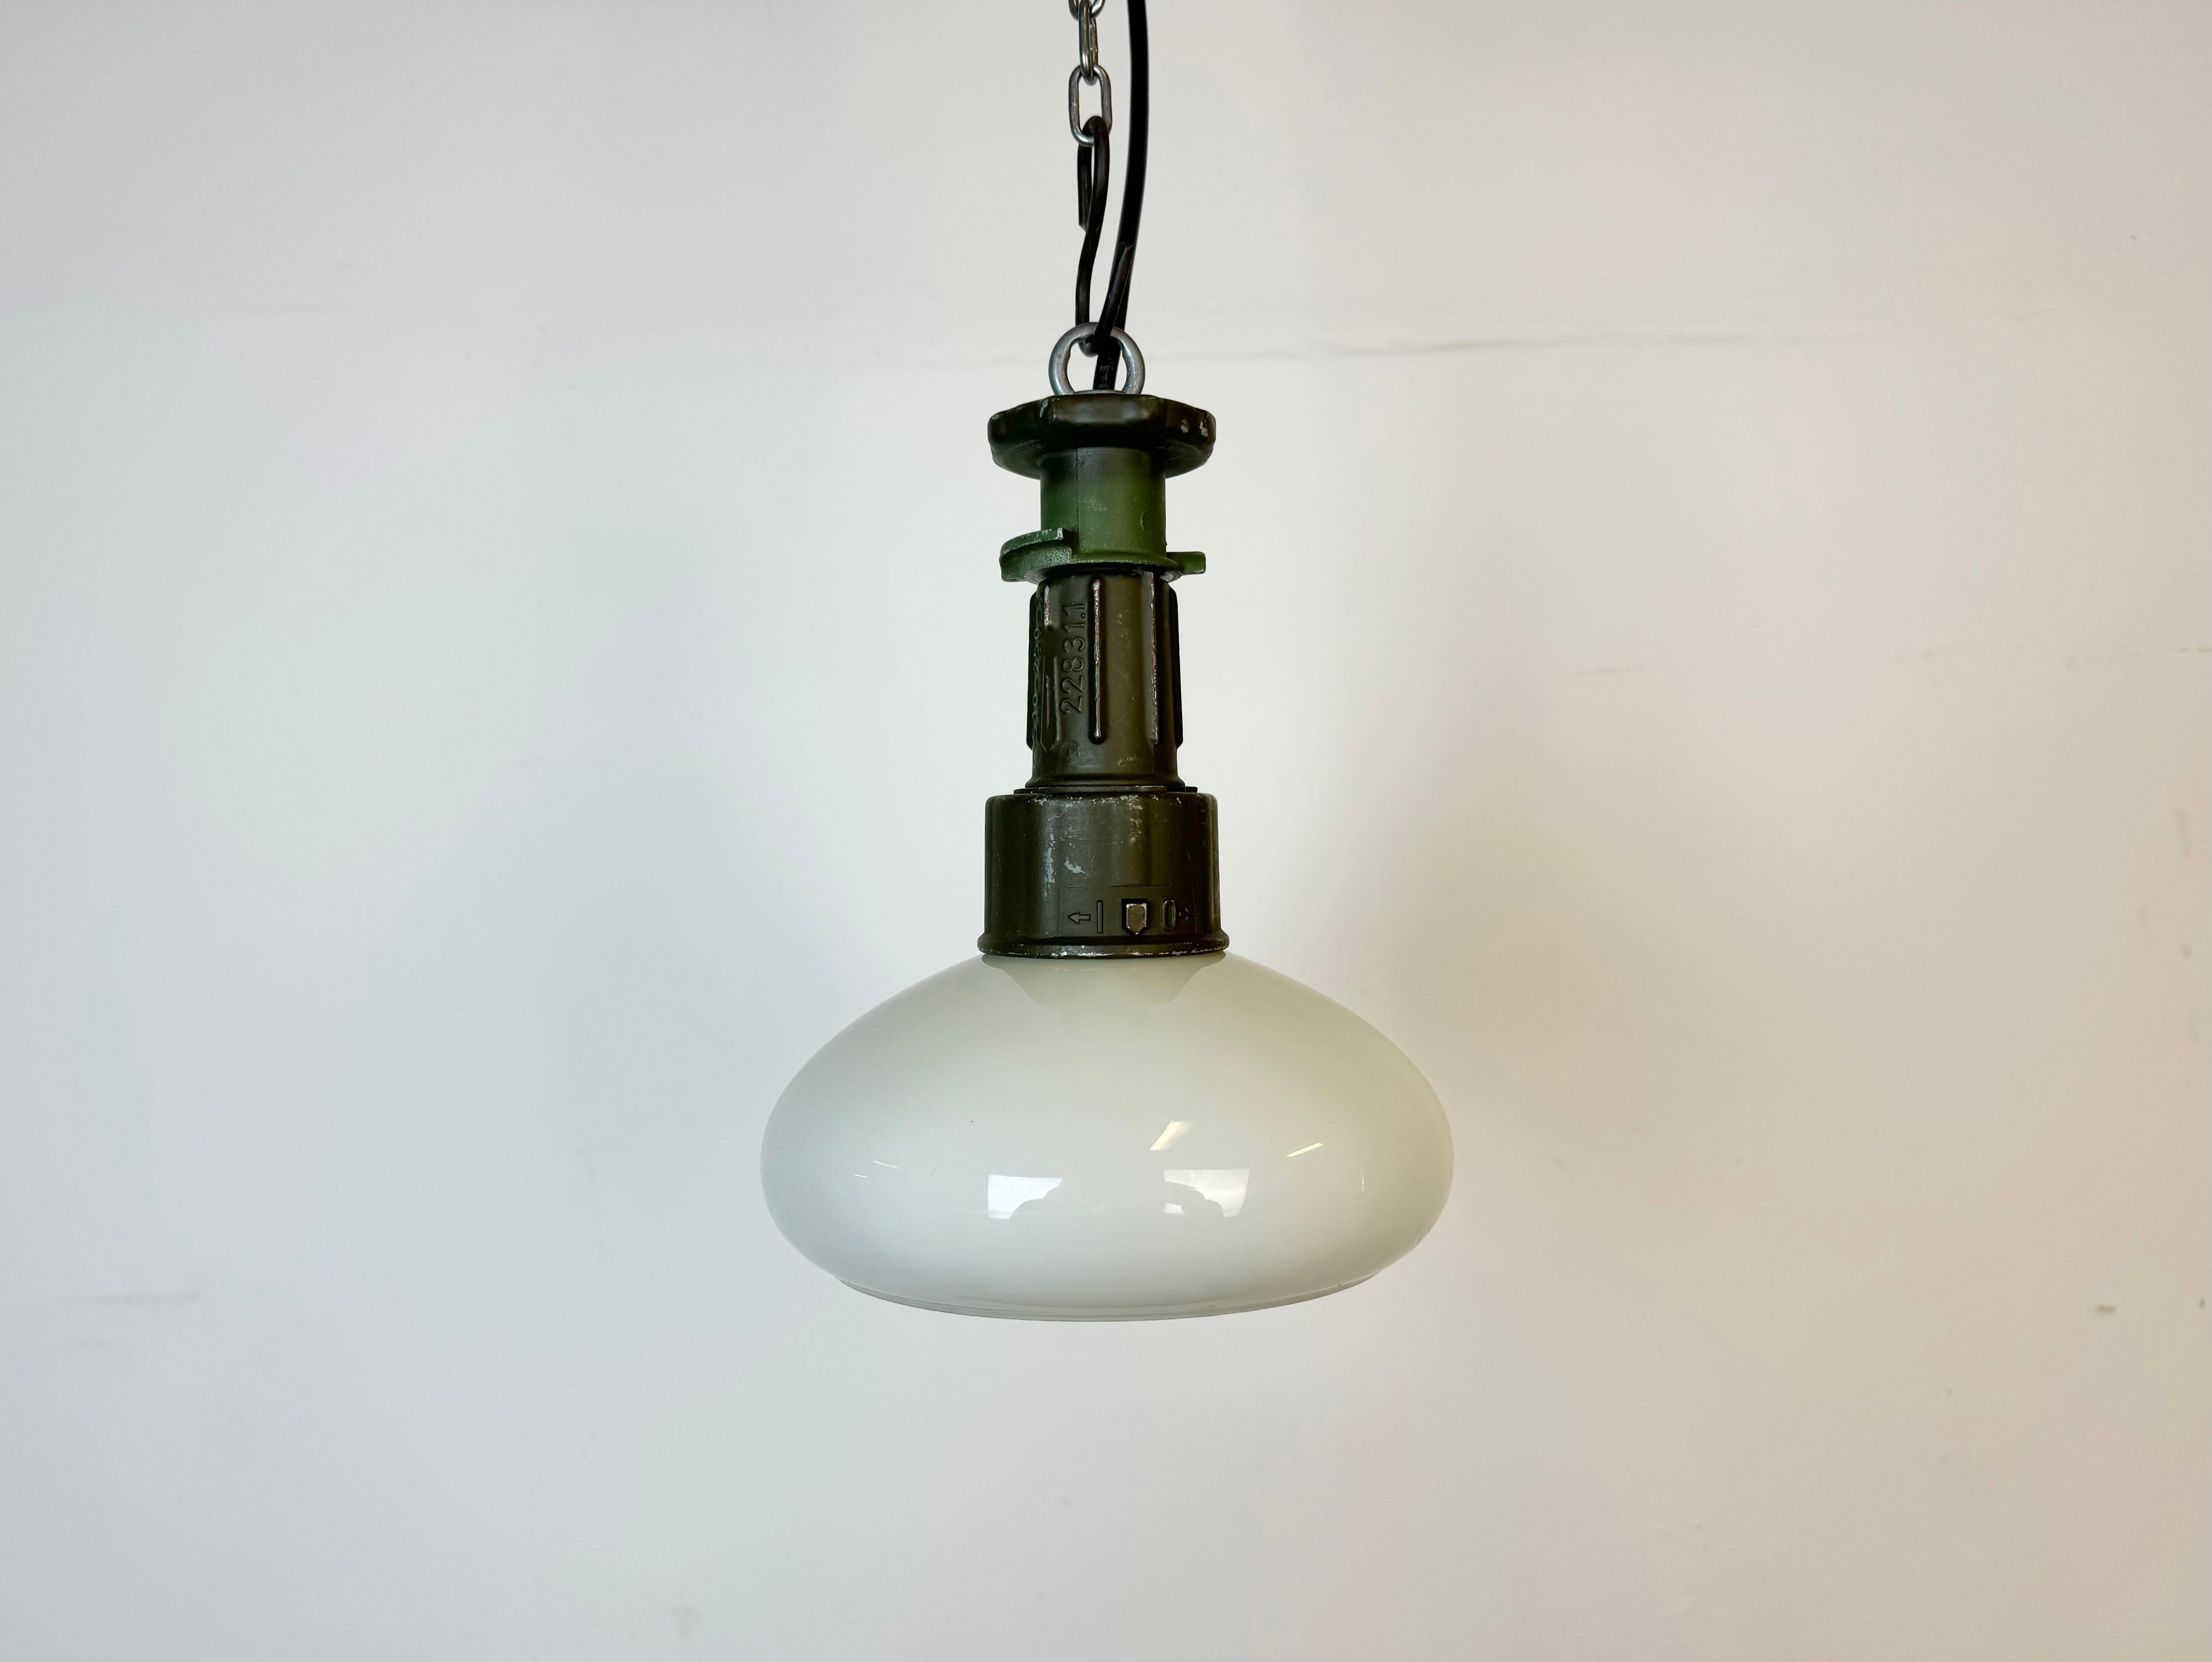 Lampe suspendue de style industriel fabriquée en Pologne dans les années 1960, avec une partie supérieure en fonte d'aluminium verte et un abat-jour en verre au lait. La douille est compatible avec les ampoules standard E 27/ E26. Un nouveau fil. Le